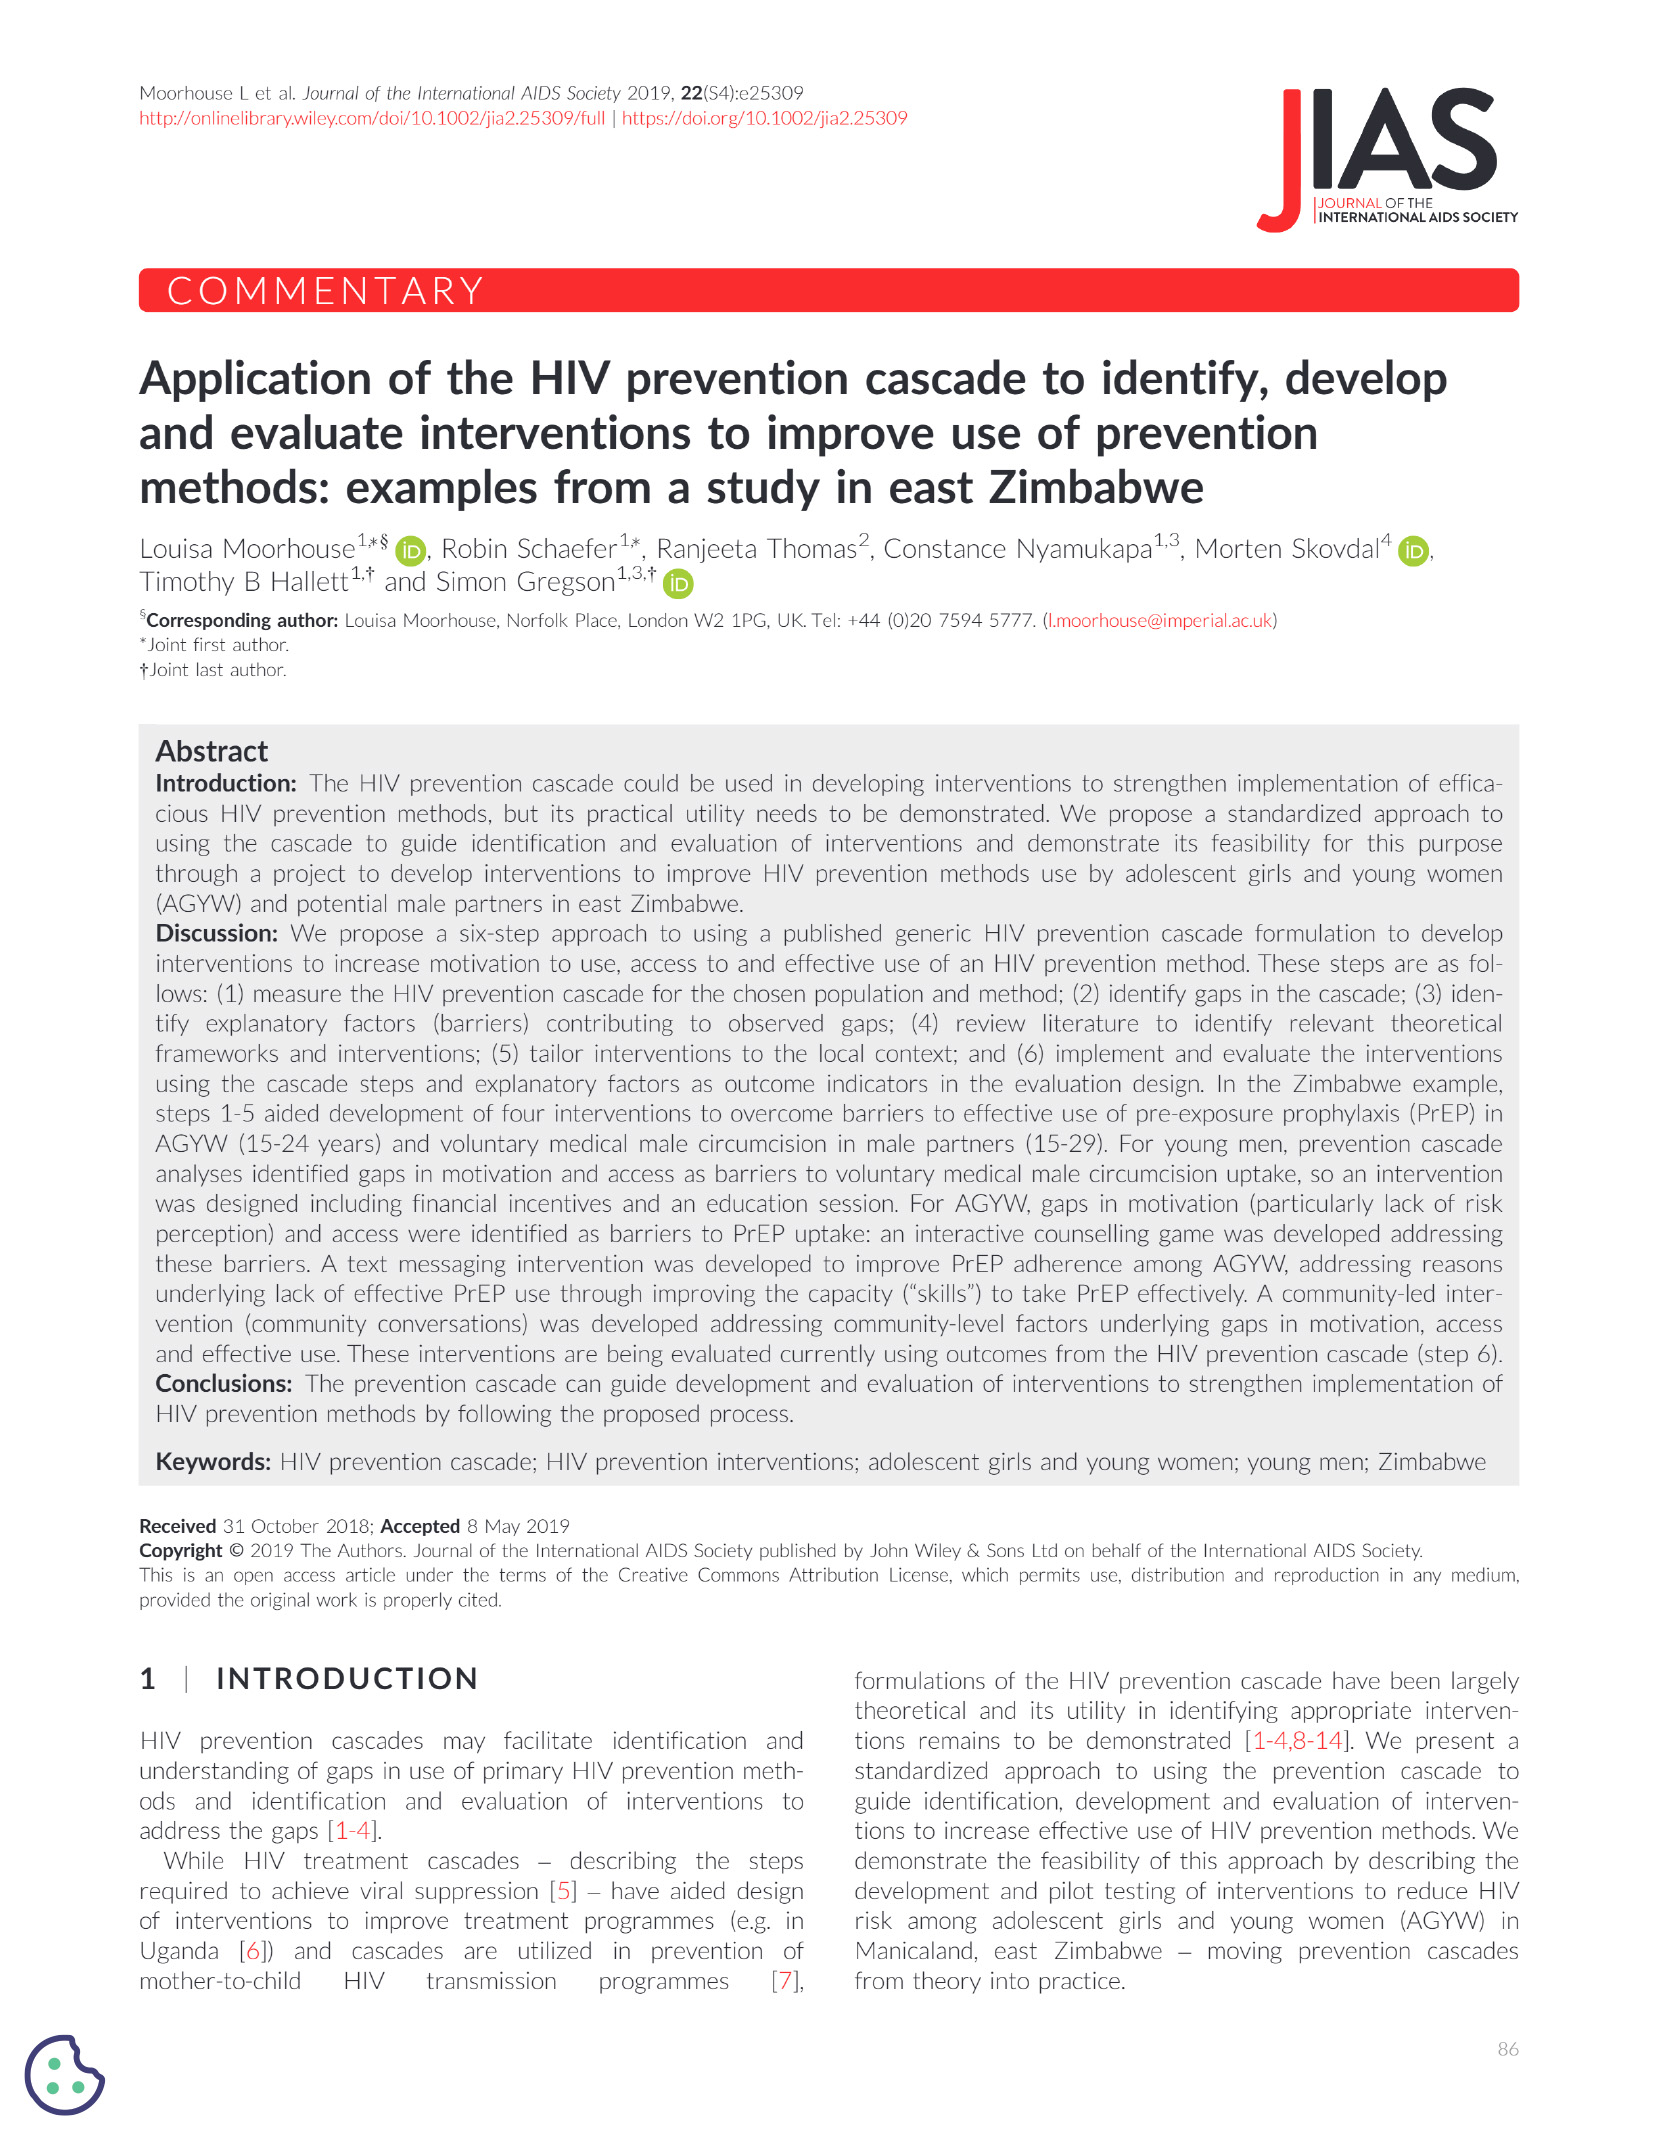 Application de la cascade de prévention du VIH pour identifier, développer et évaluer les interventions visant à améliorer l'utilisation des méthodes de prévention : Exemples d'une étude dans l'est du Zimbabwe - couverture